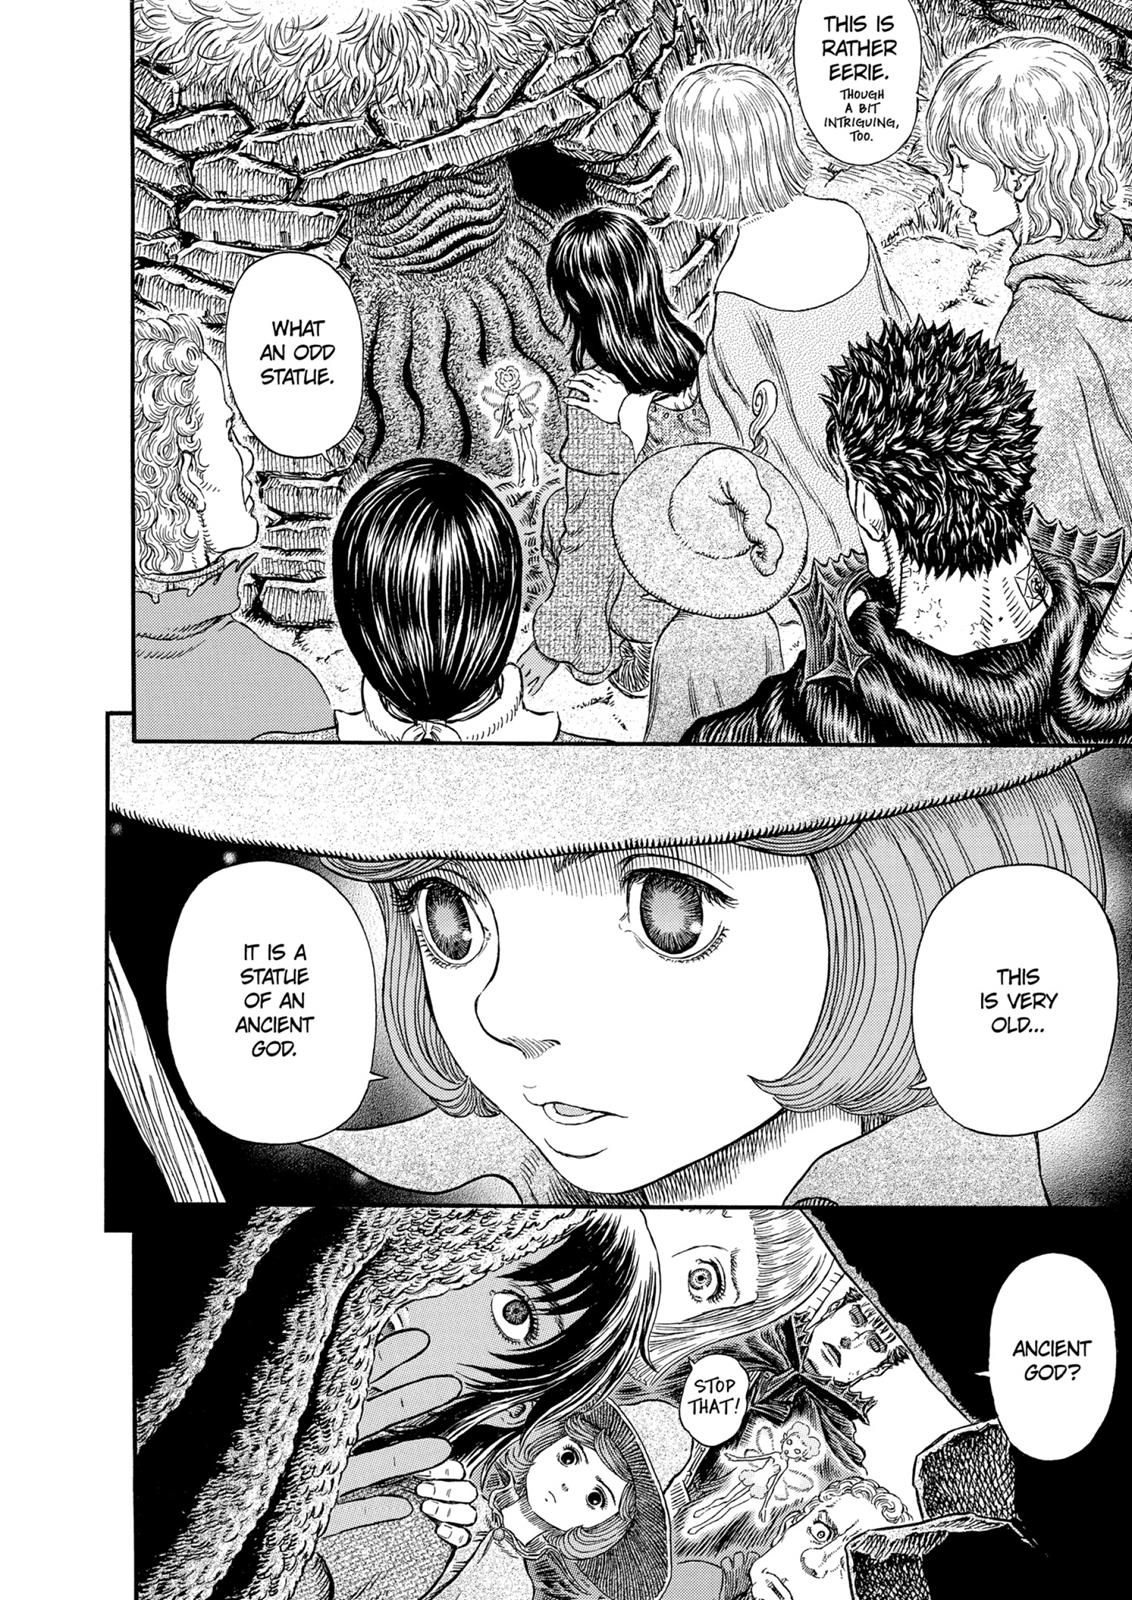 Berserk Manga Chapter 312 image 05